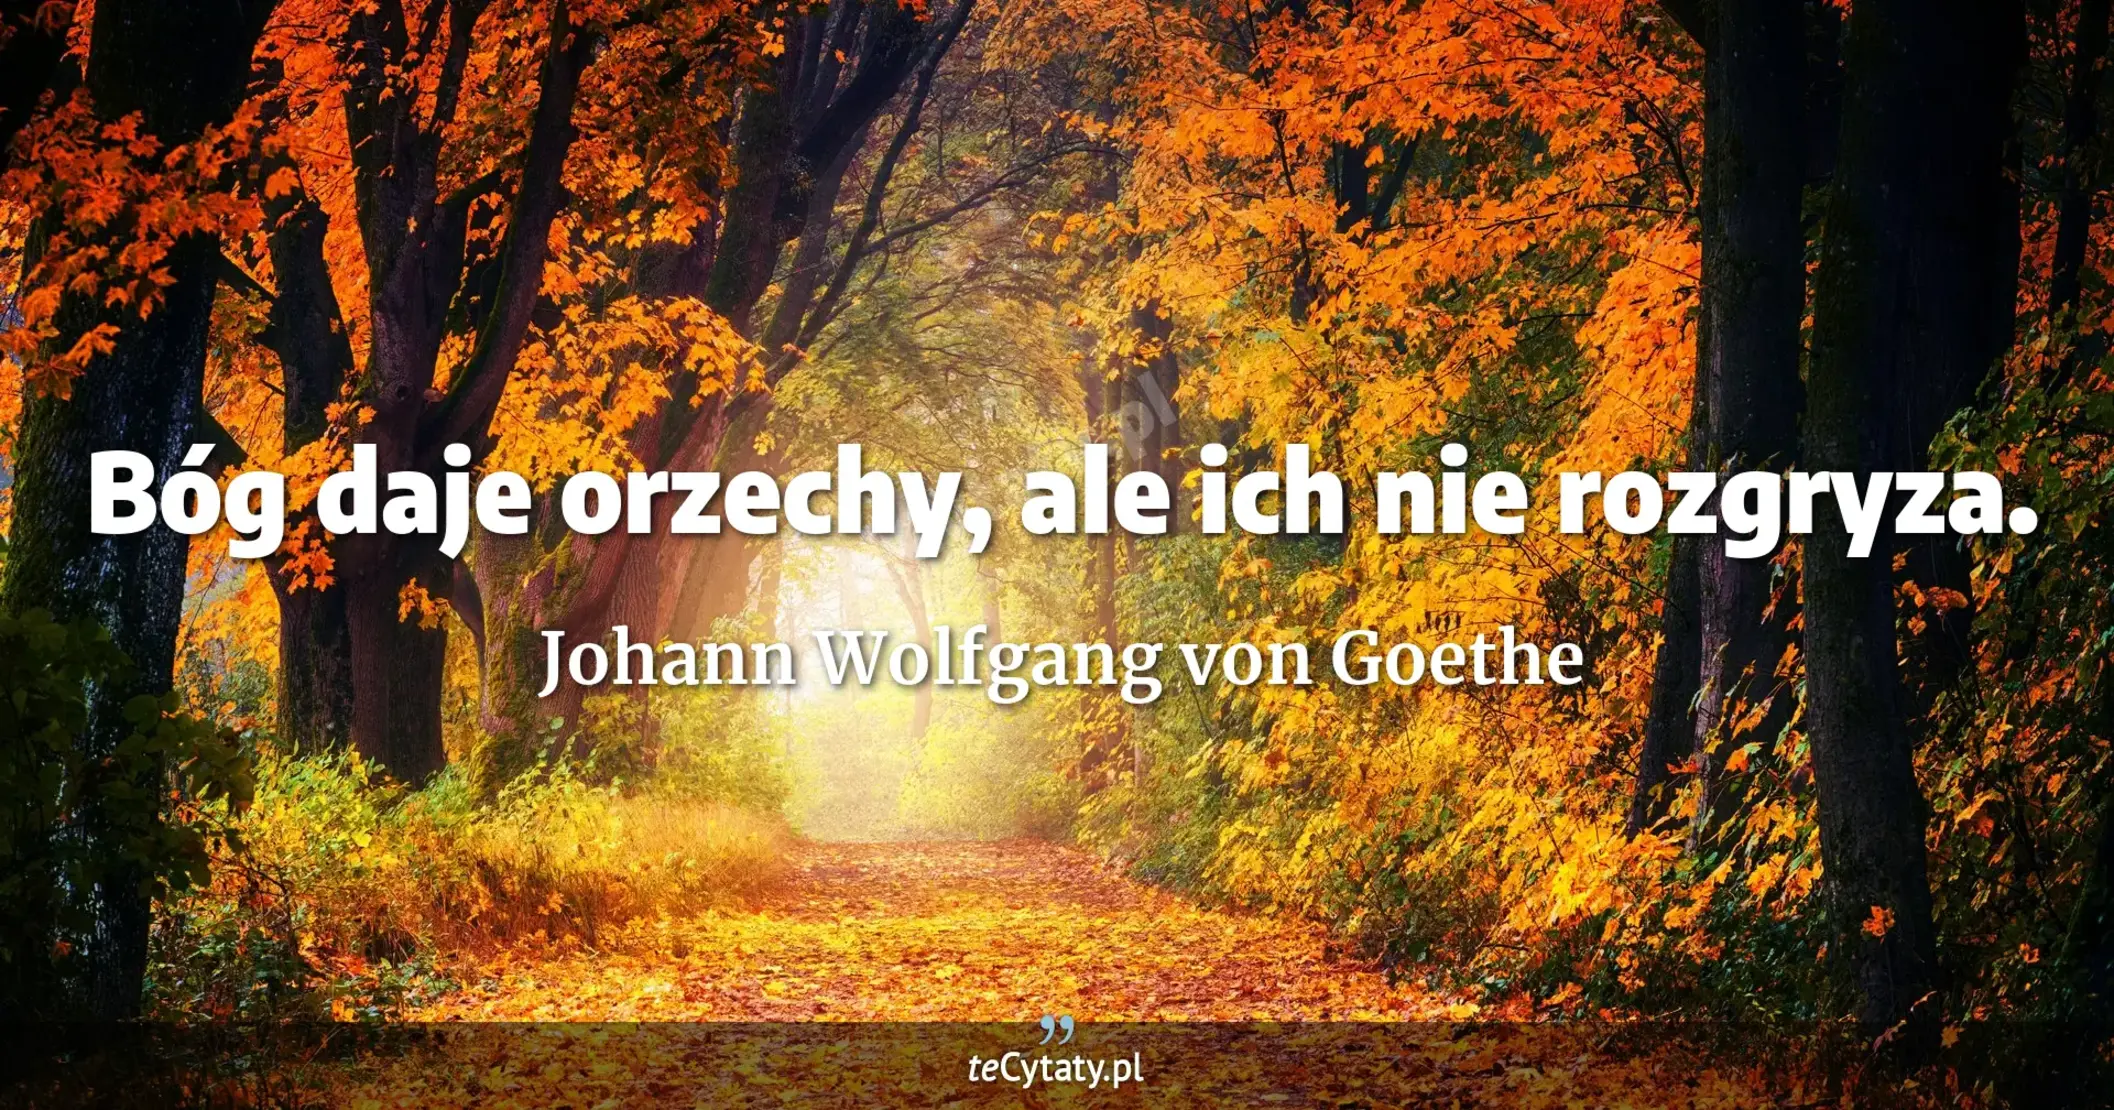 Bóg daje orzechy, ale ich nie rozgryza. - Johann Wolfgang von Goethe